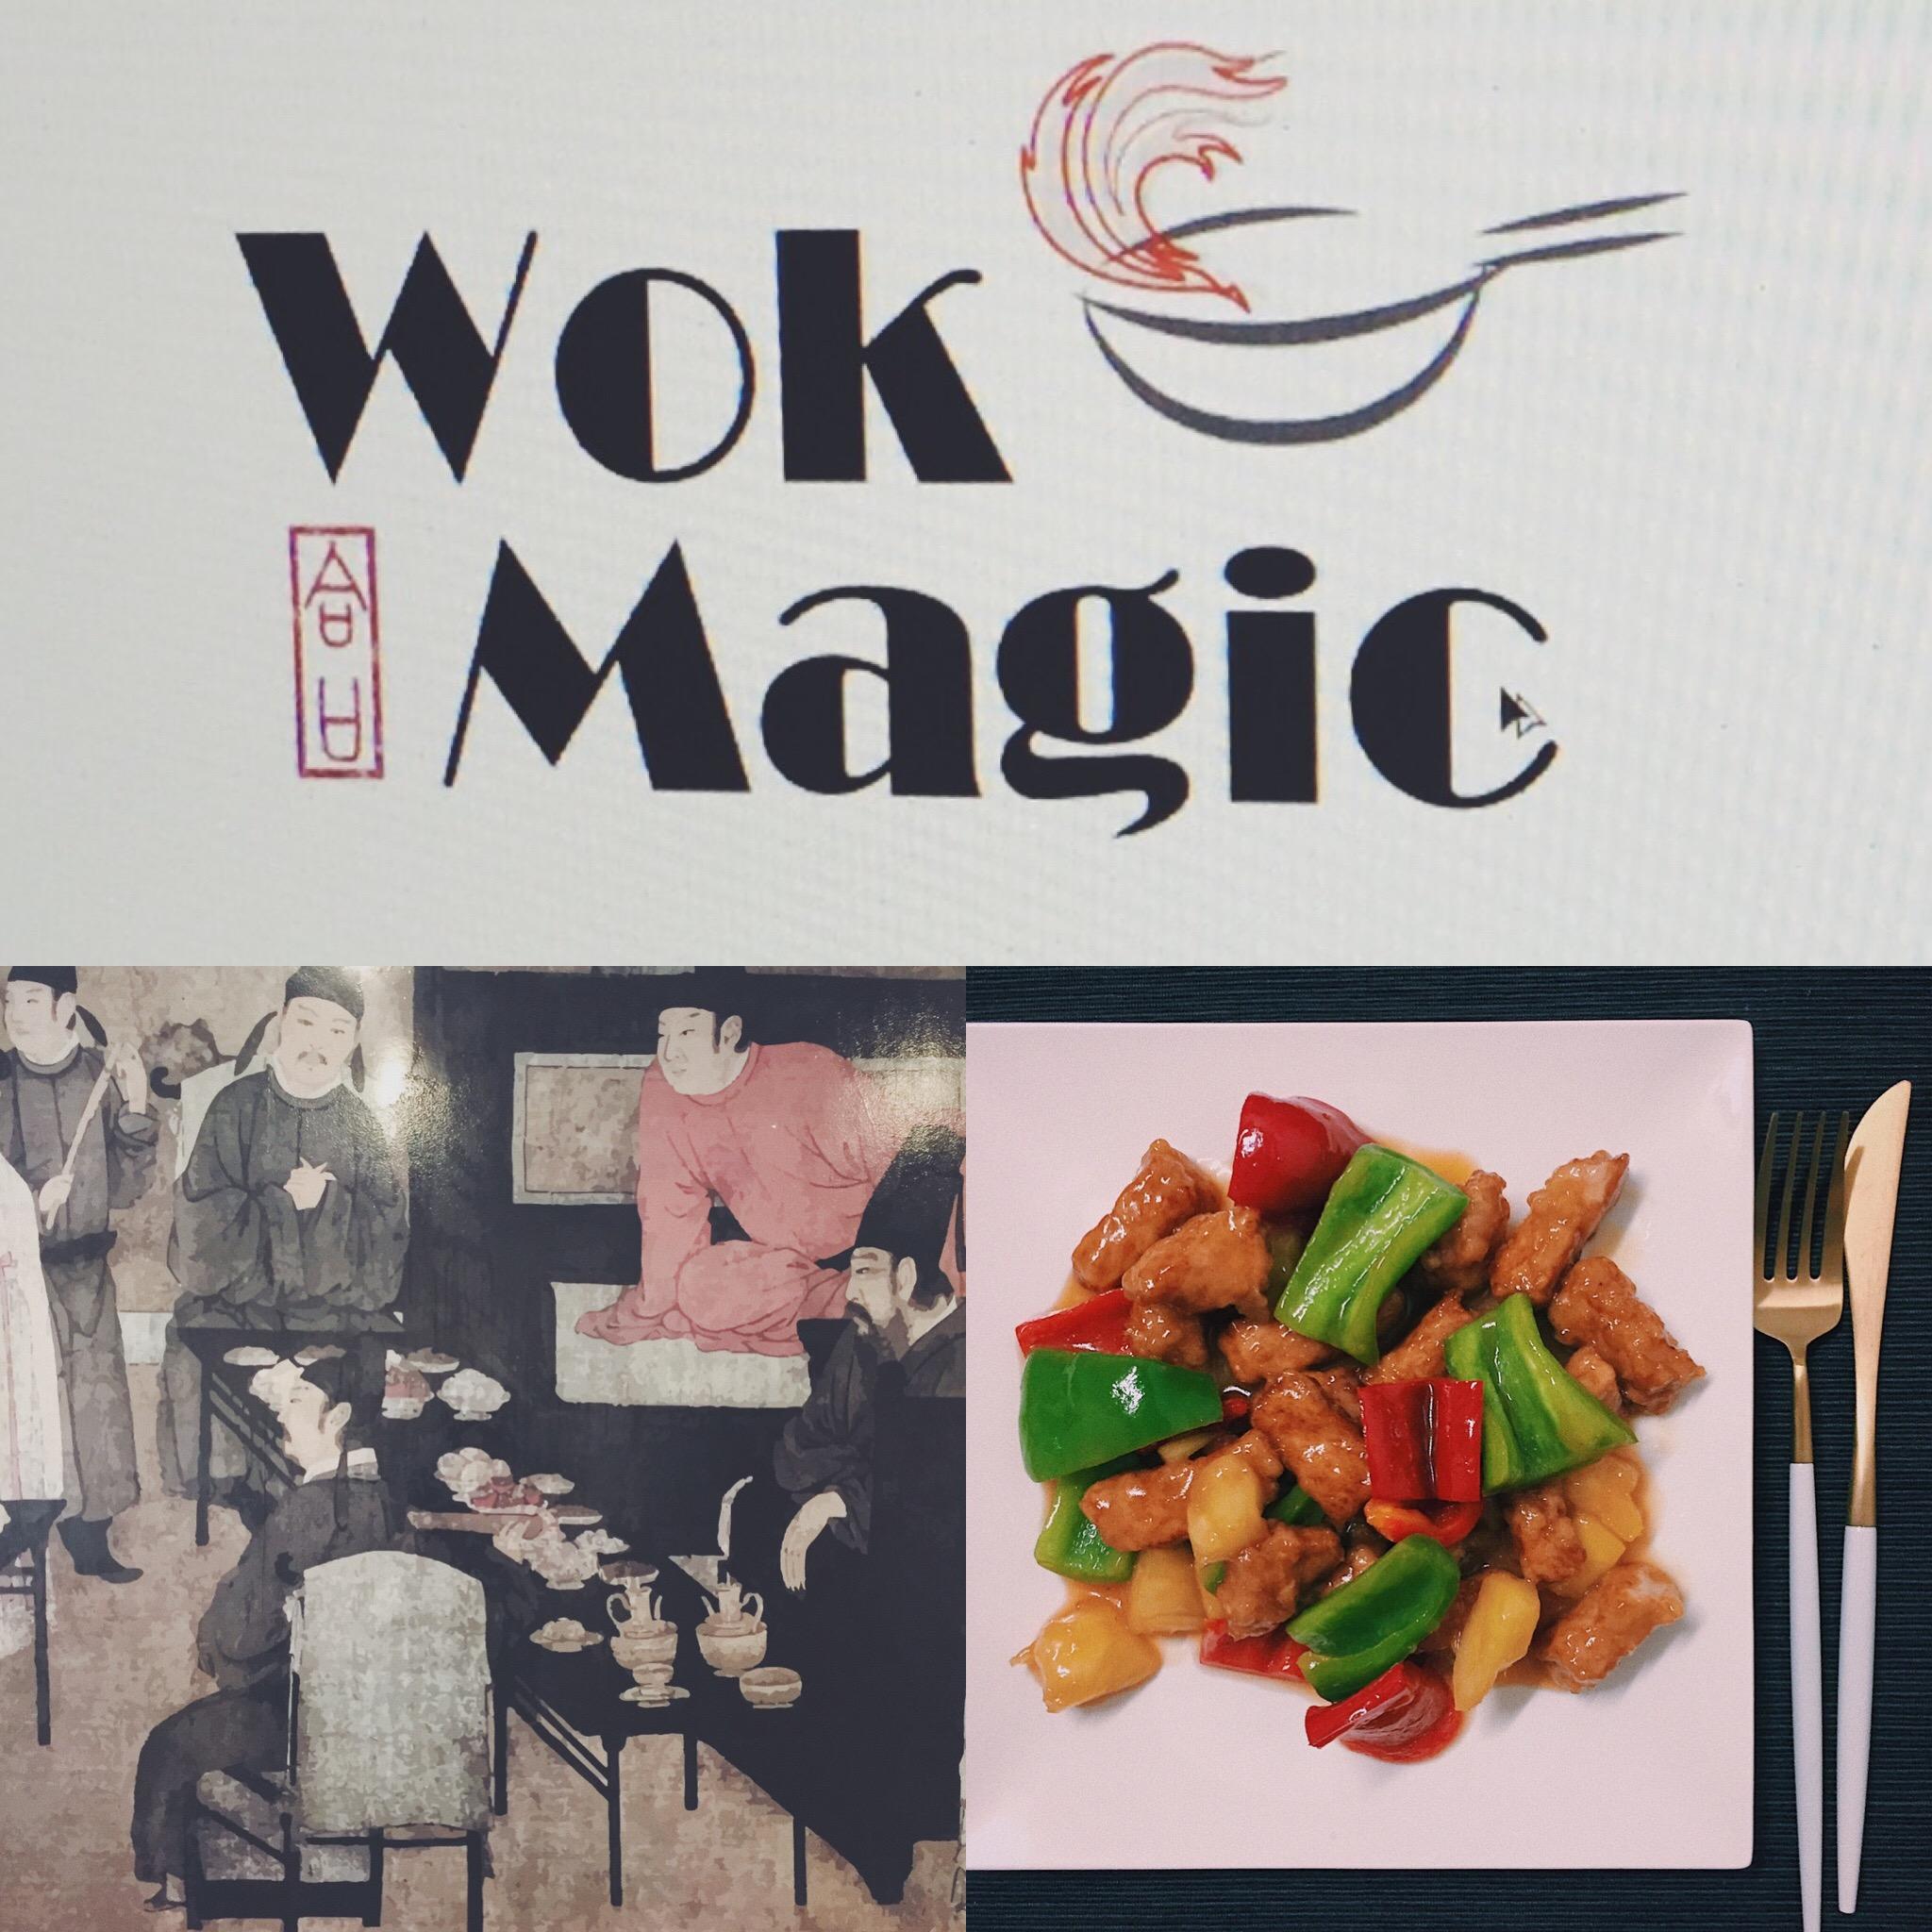 Wok Magic Chinese Restaurant